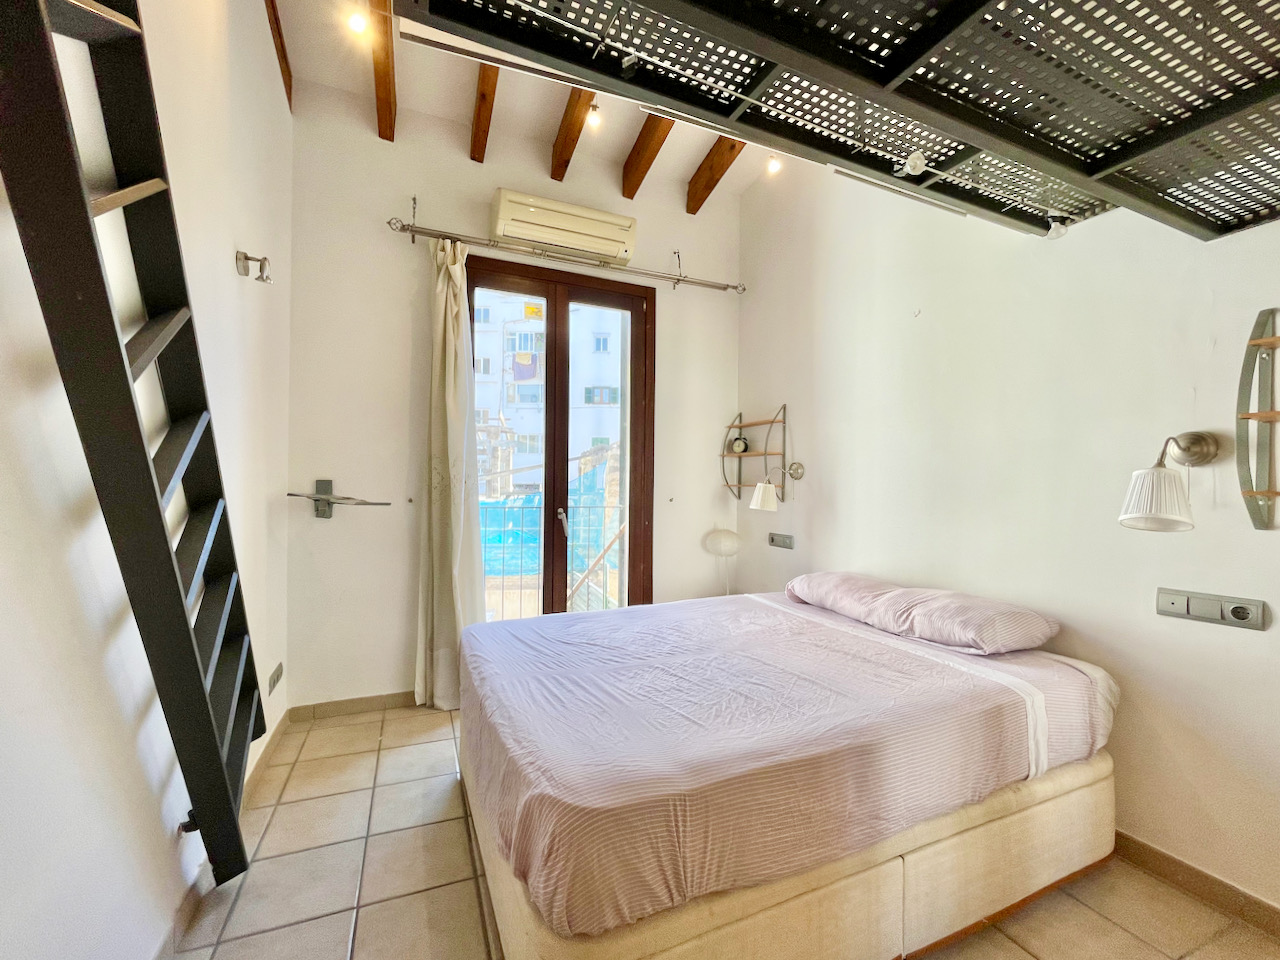 Fantastisches Apartment mit zwei Schlafzimmern in Sa Gerreria, der Altstadt von Palma.